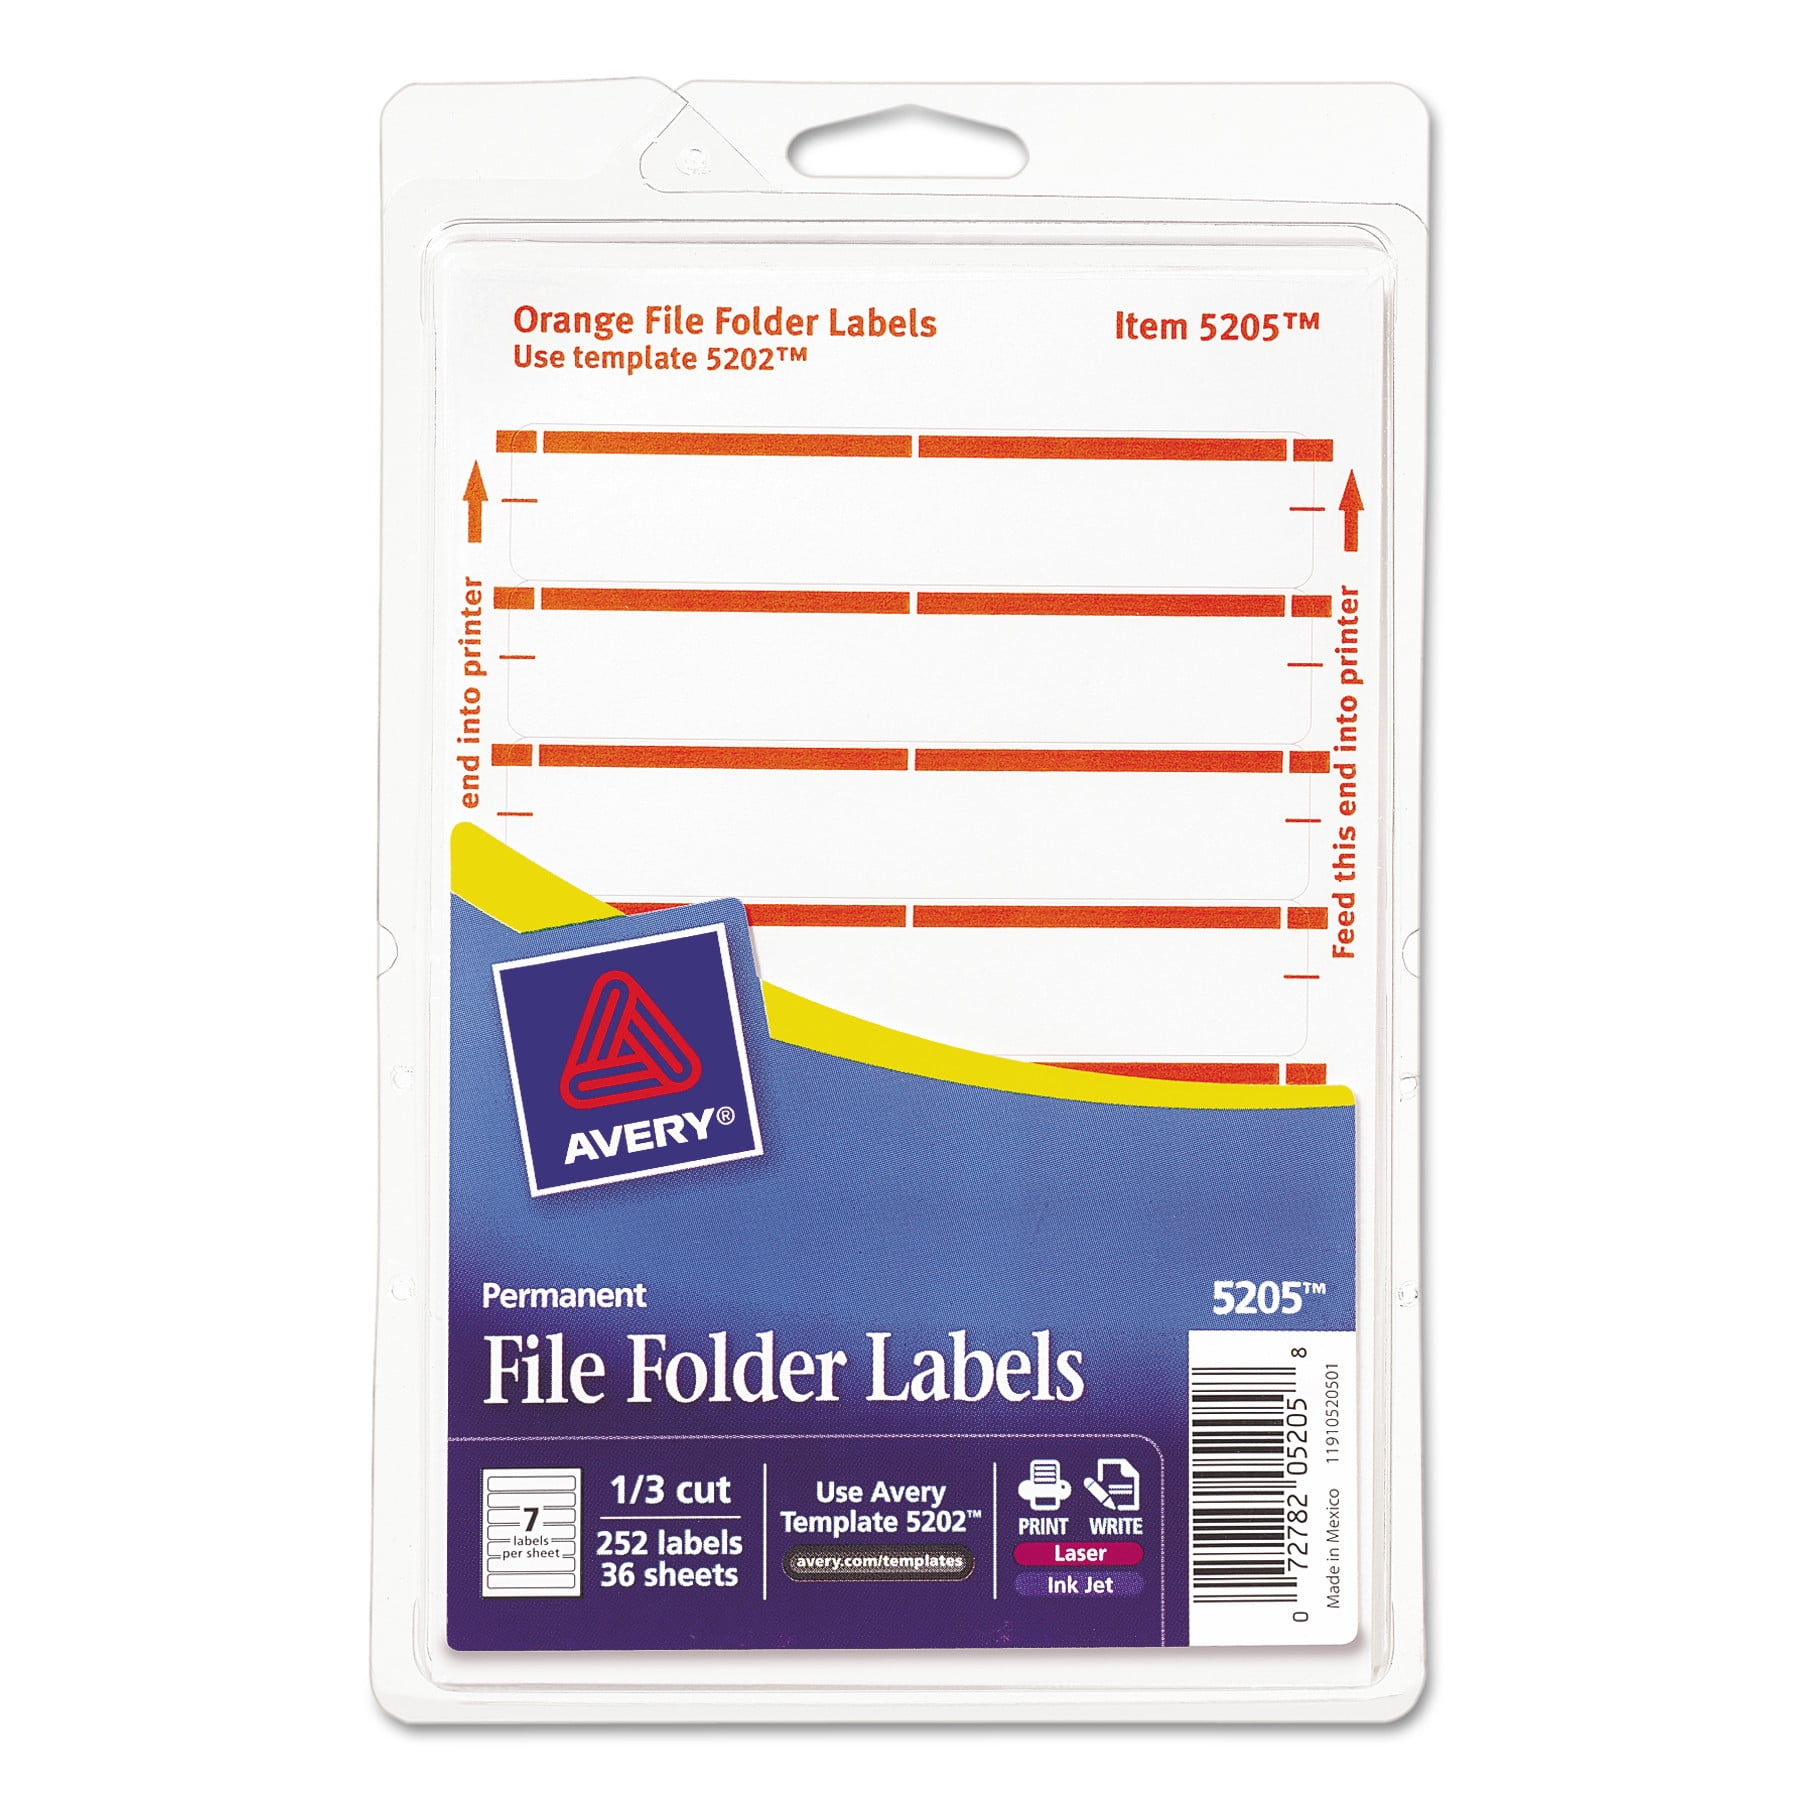 Маркам биркам. Этикетка для папки регистратора. File folder Labels.